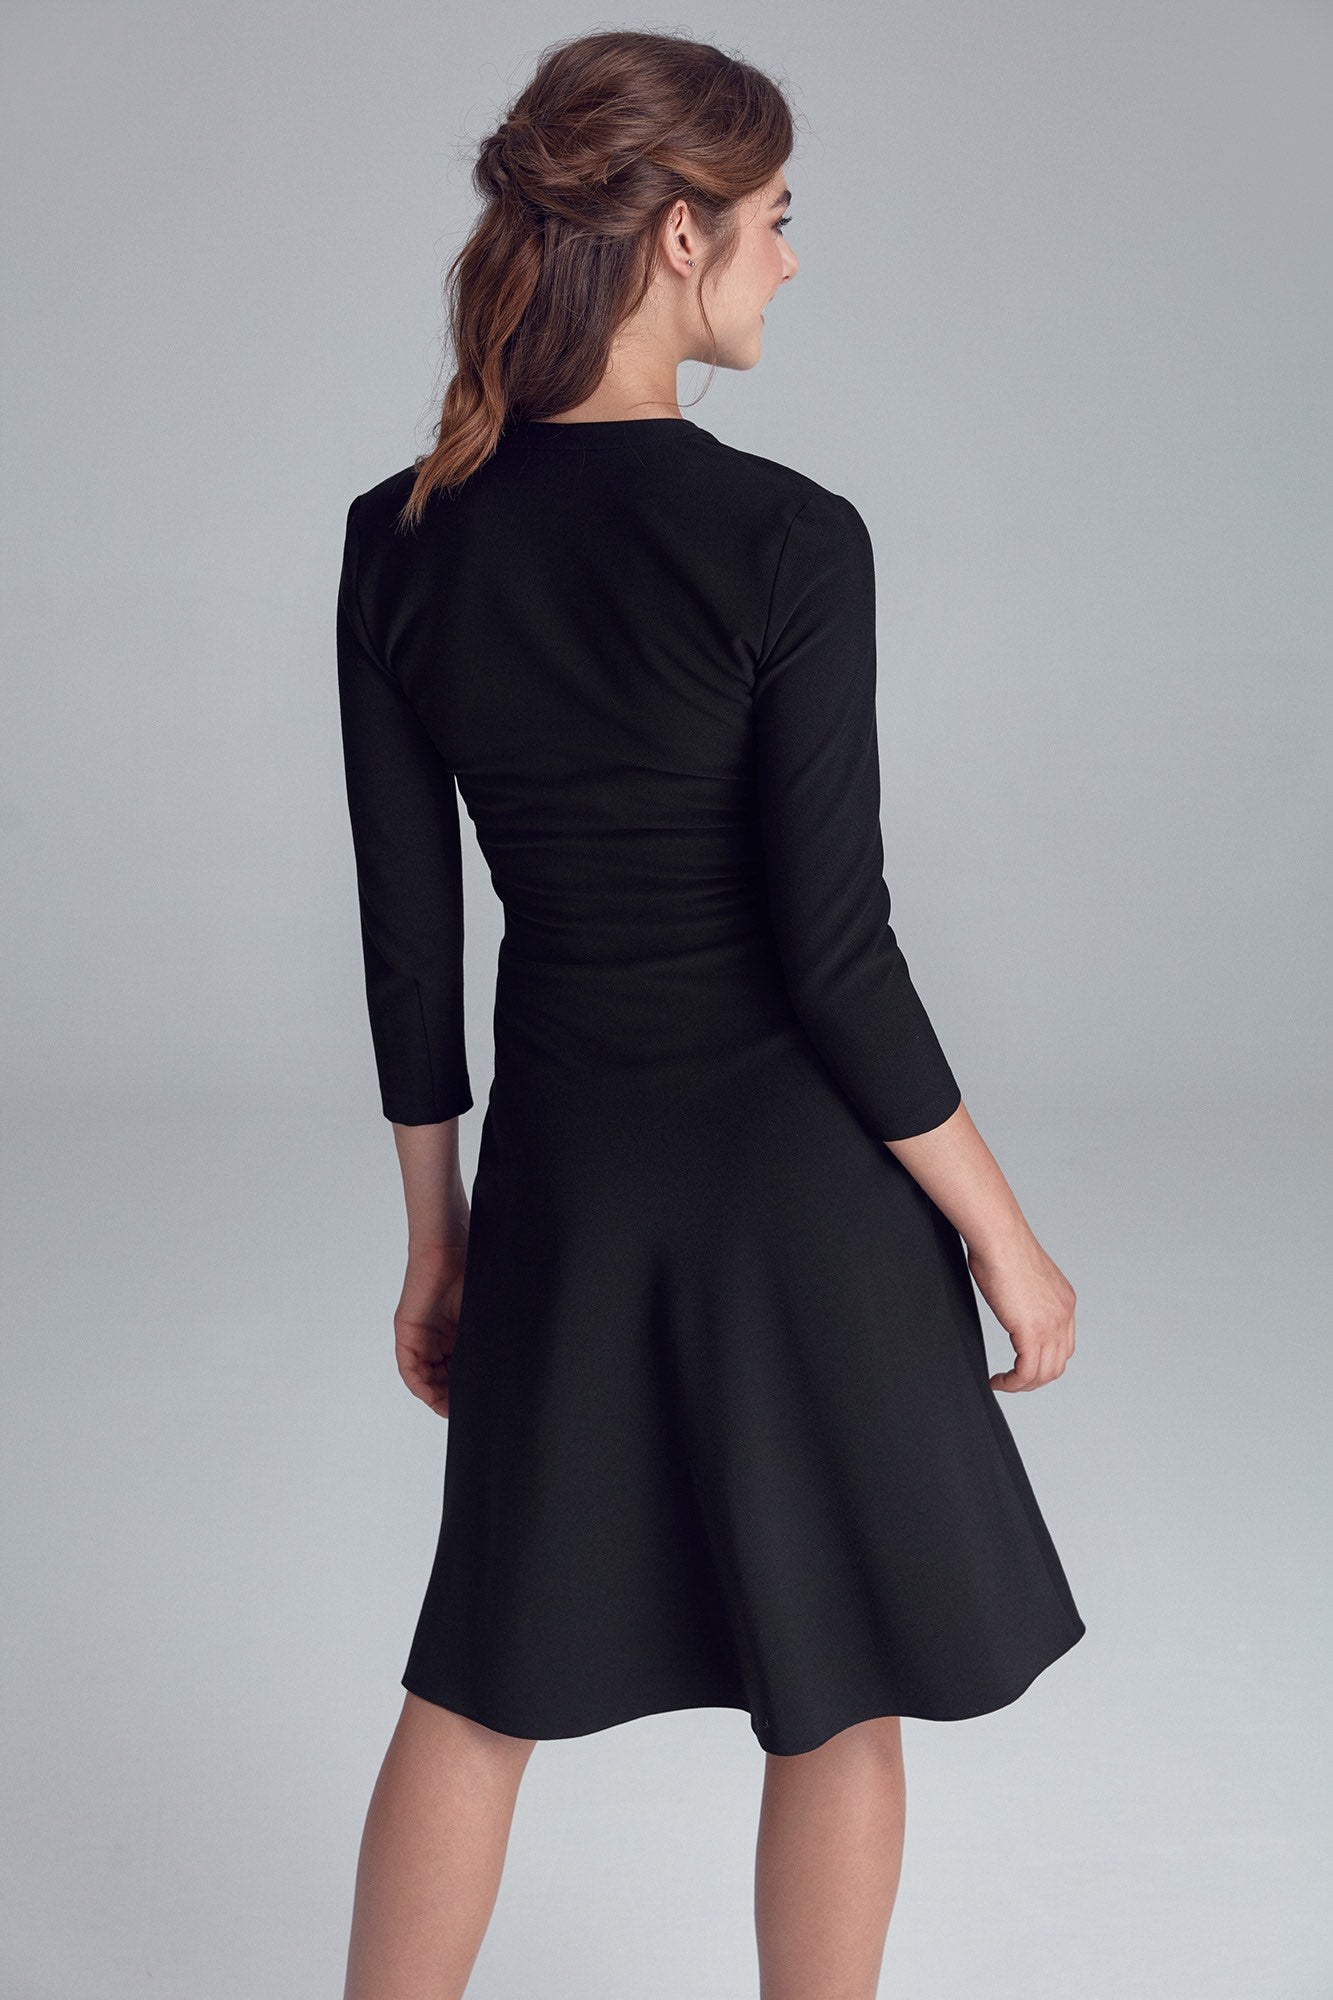 Robe noire casual pour un Look Féminin